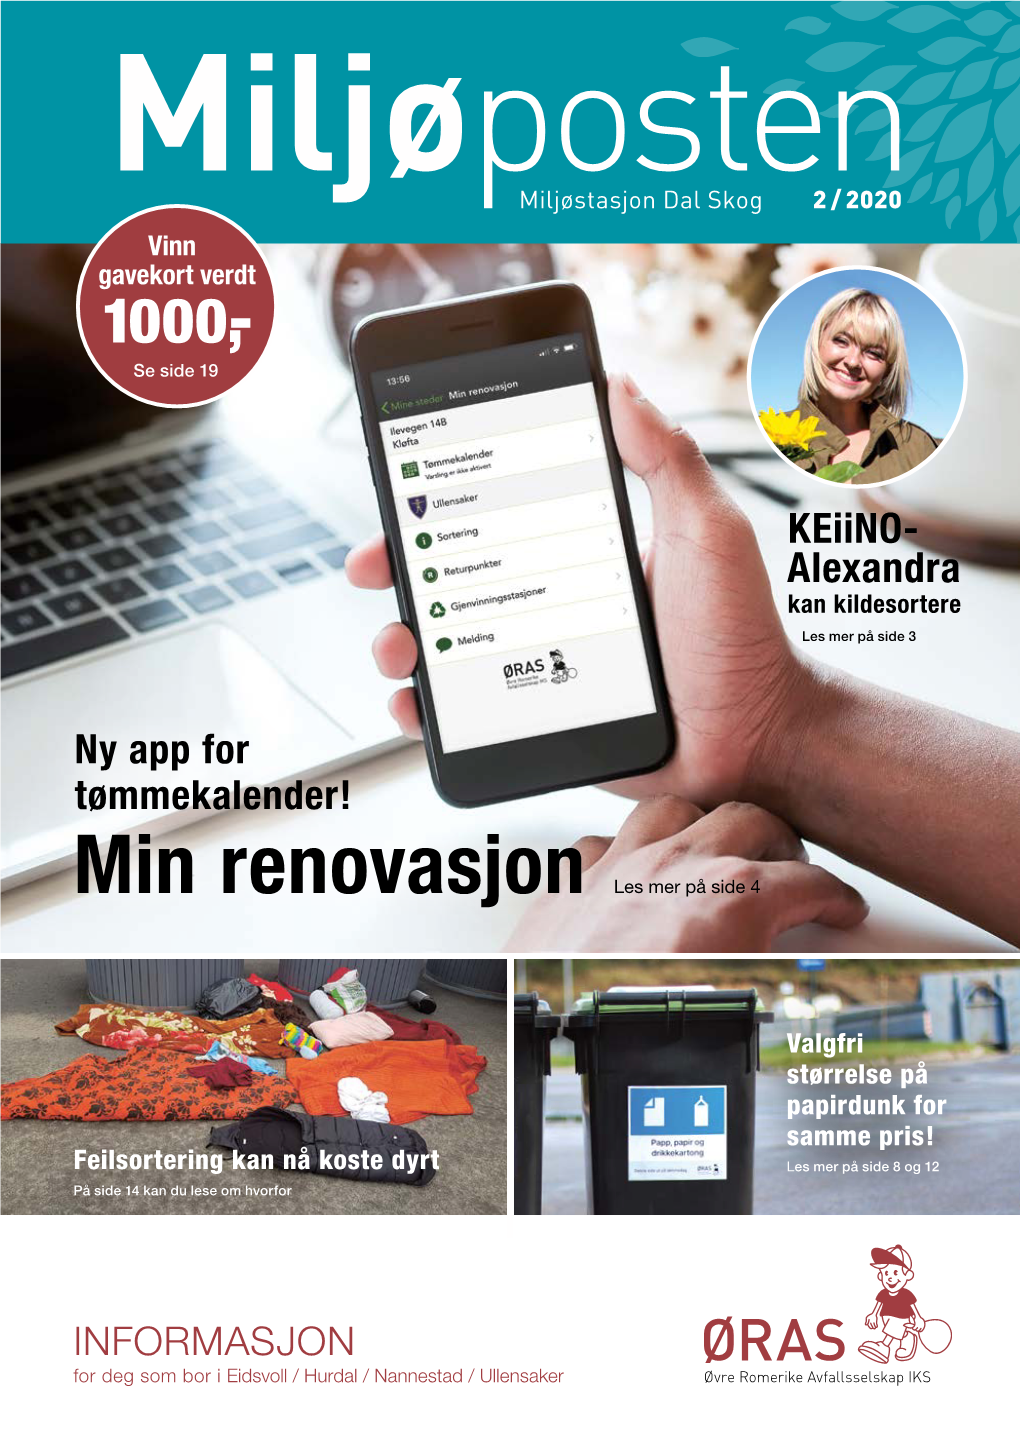 ØRAS Miljøposten 2/2020 (PDF, 3MB)